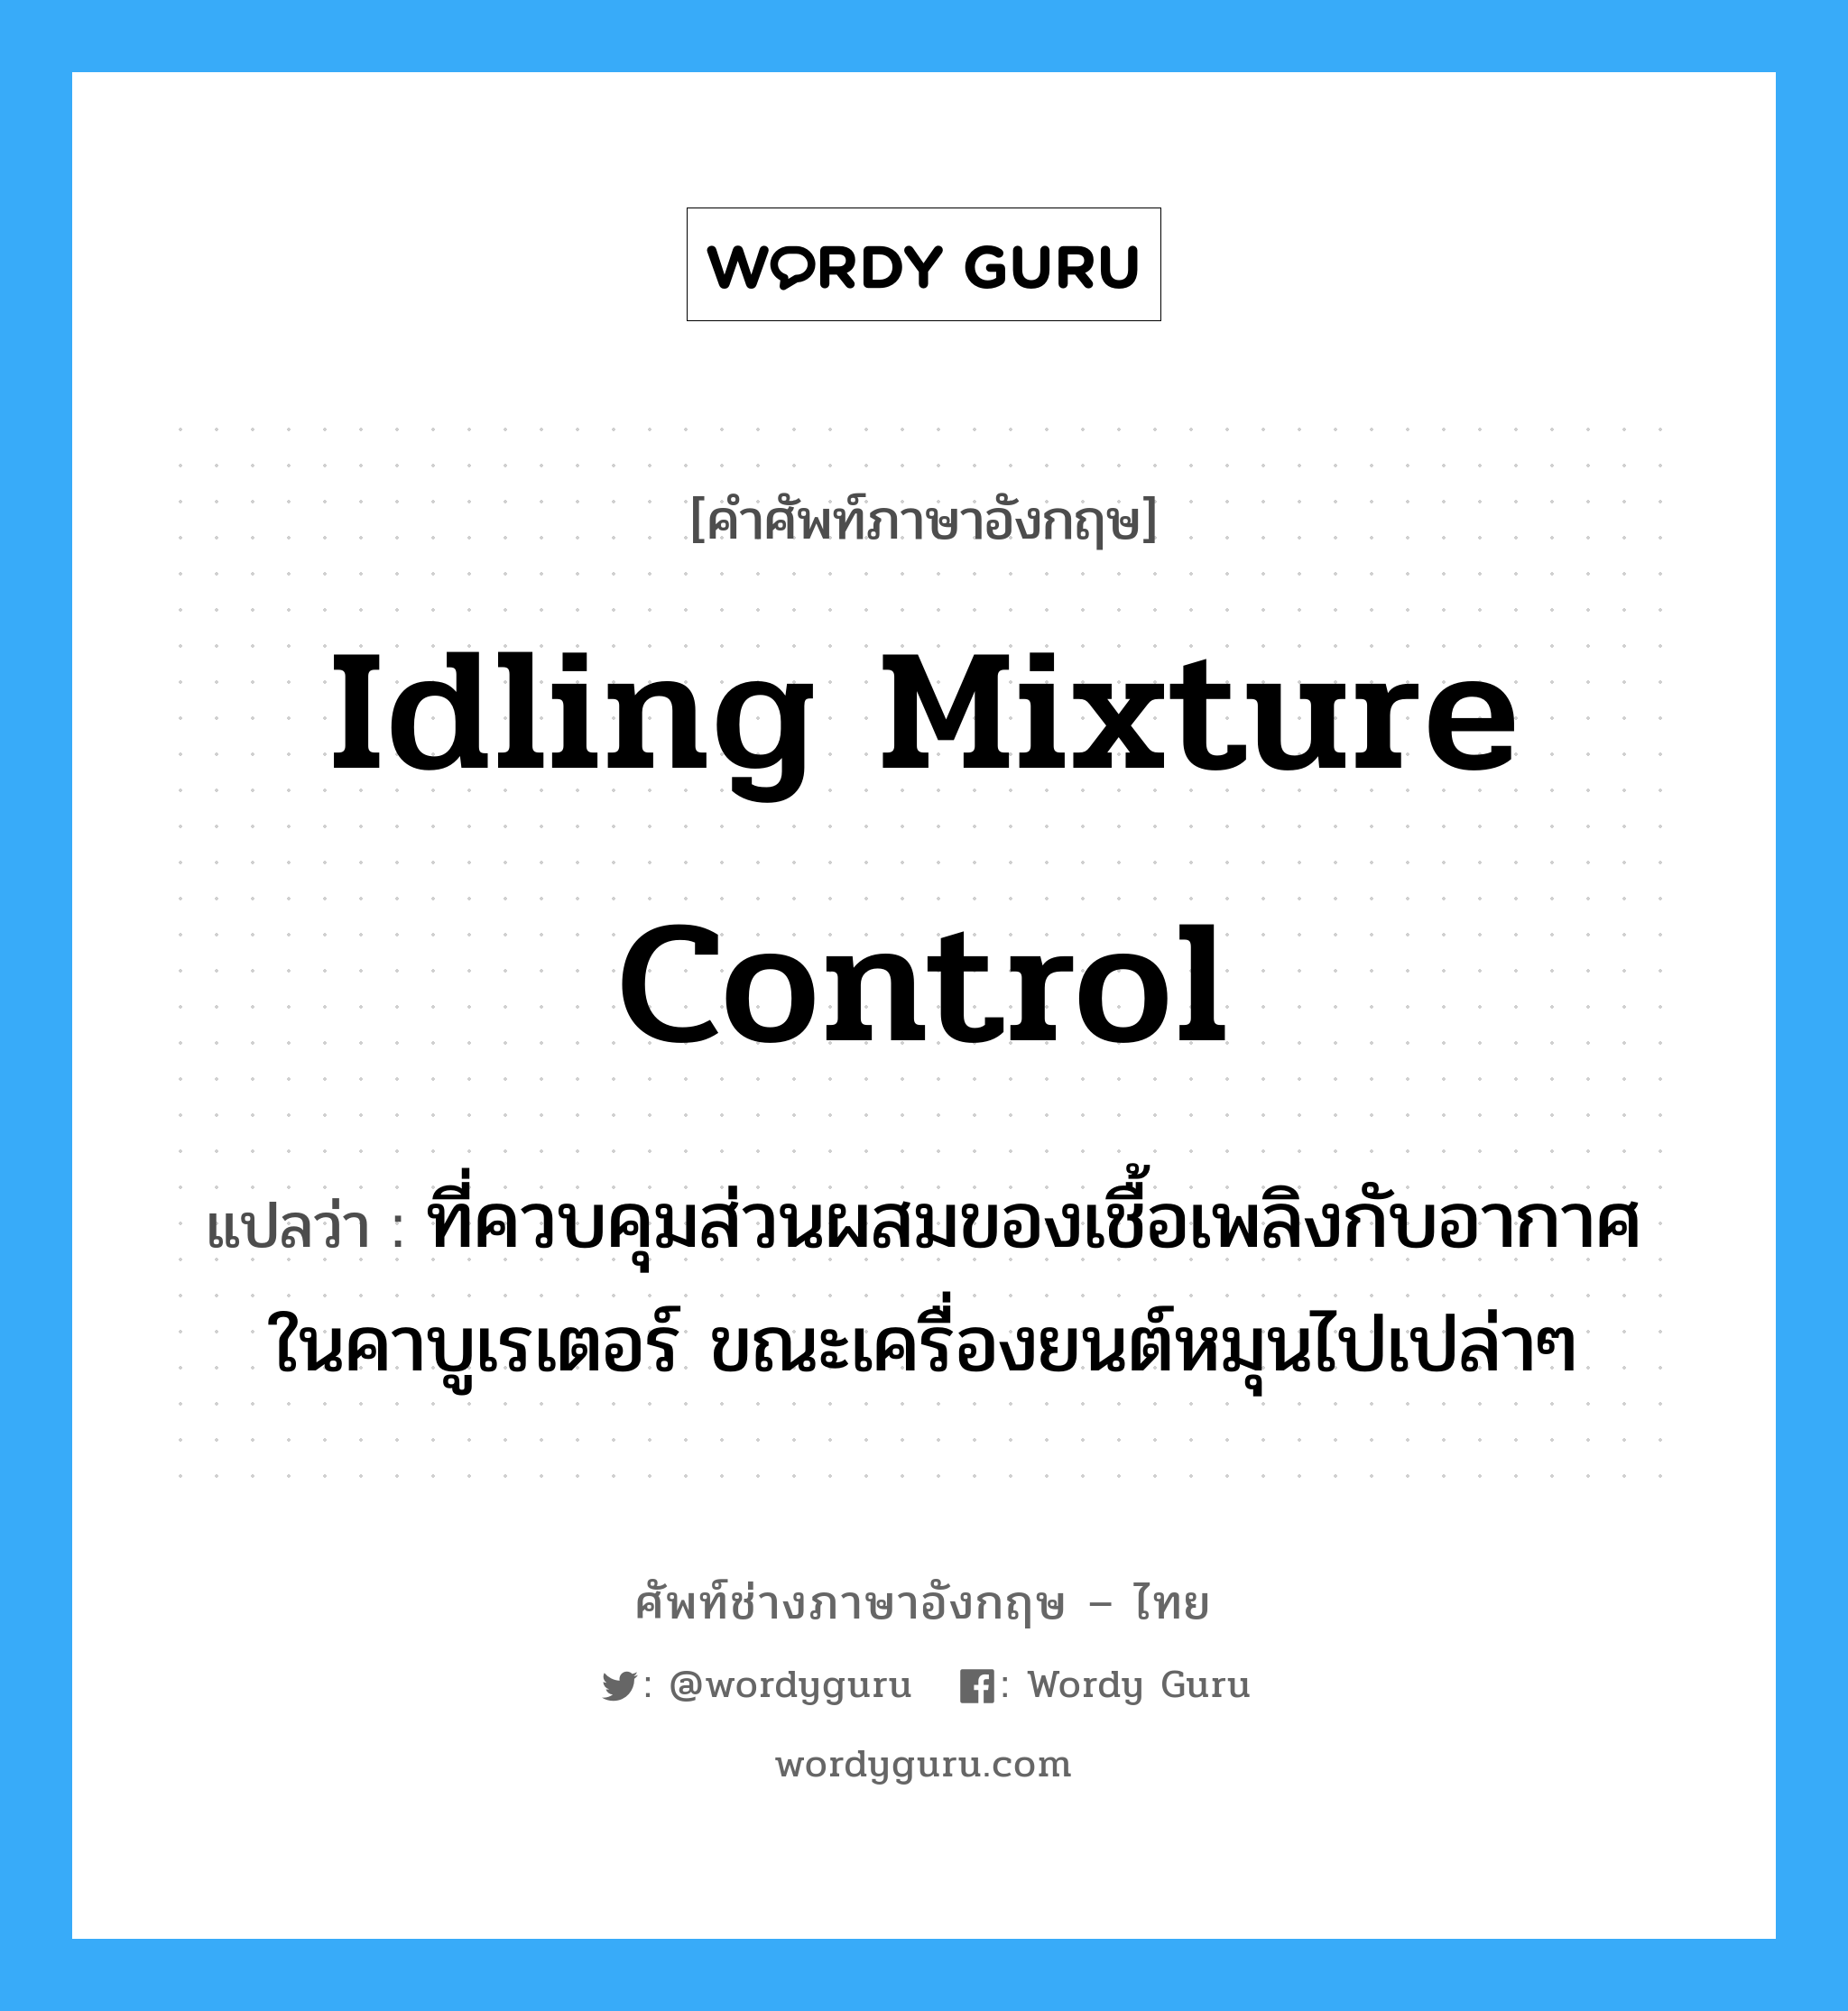 idling mixture control แปลว่า?, คำศัพท์ช่างภาษาอังกฤษ - ไทย idling mixture control คำศัพท์ภาษาอังกฤษ idling mixture control แปลว่า ที่ควบคุมส่วนผสมของเชื้อเพลิงกับอากาศ ในคาบูเรเตอร์ ขณะเครื่องยนต์หมุนไปเปล่าๆ